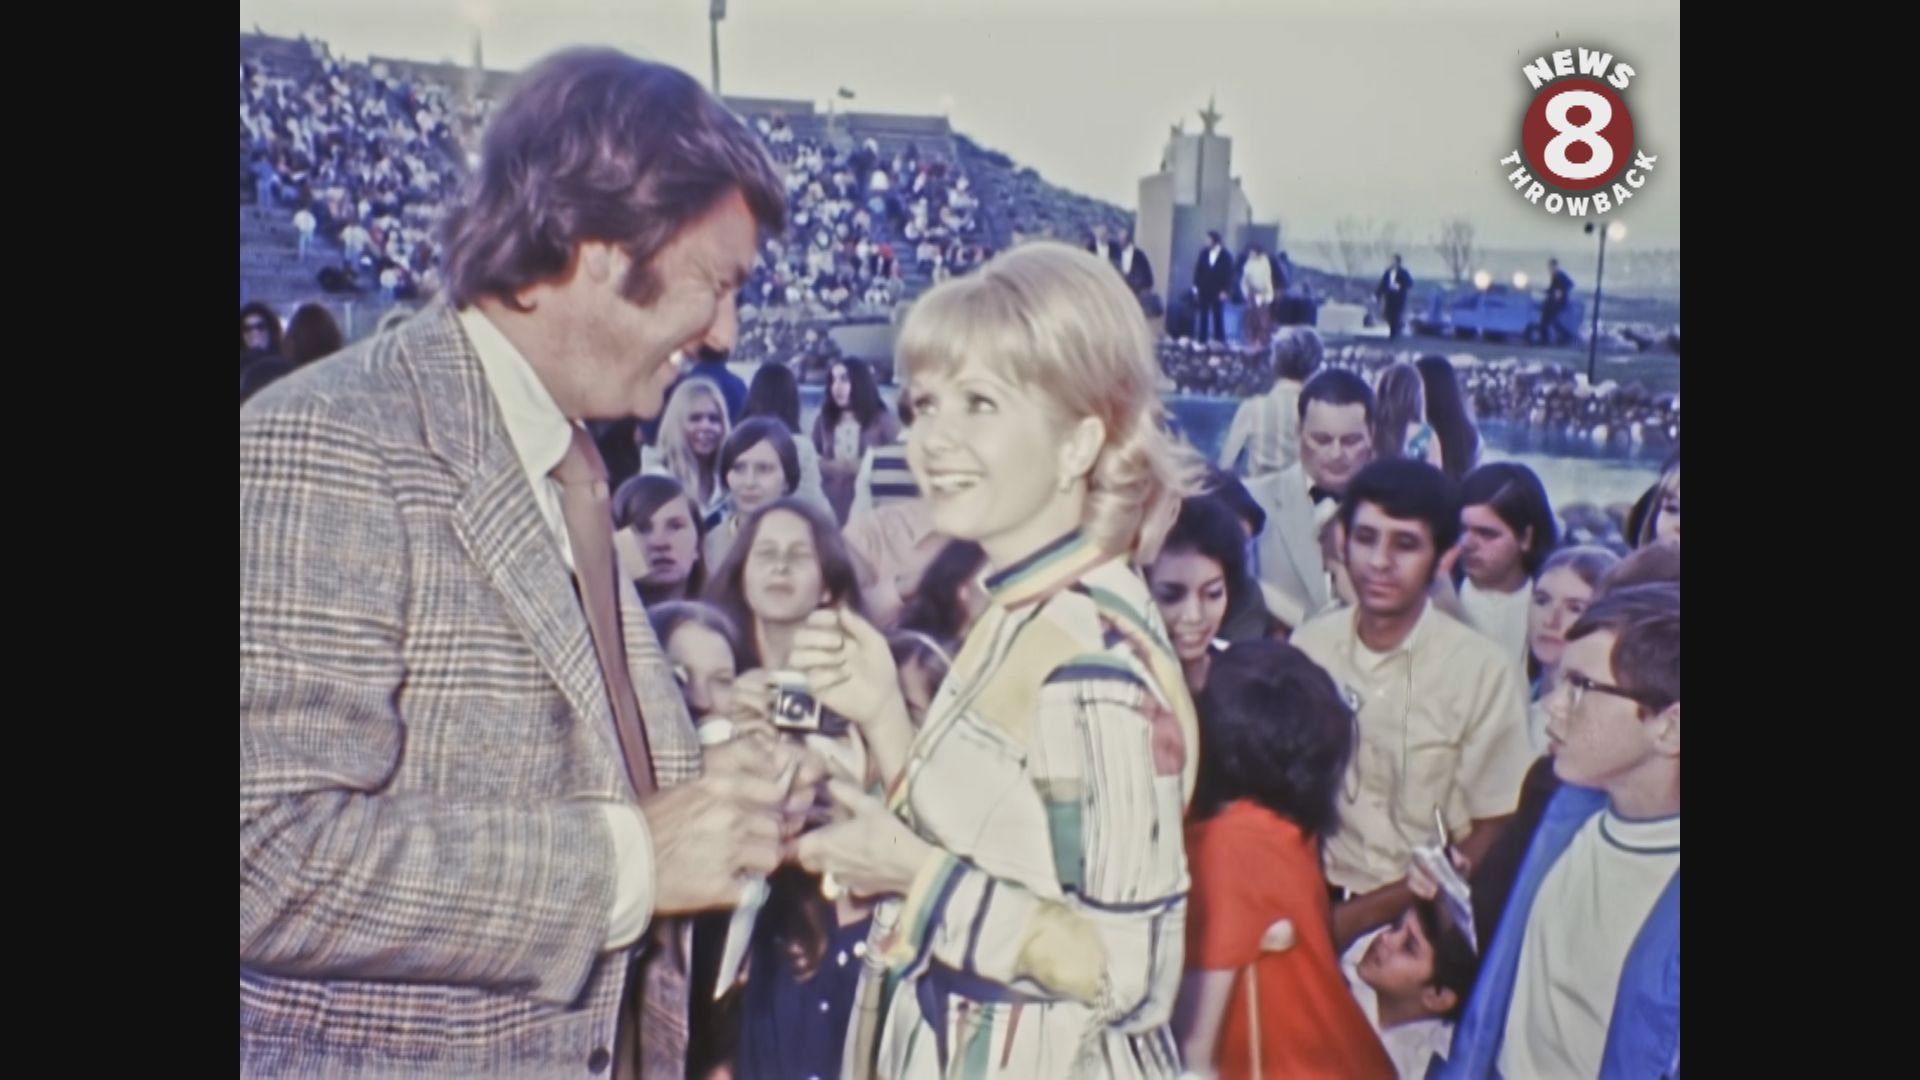 Debbie Reynolds, Vincent Price, Robert Wagner, Steve Allen attend Shamu show premiere in 1971.